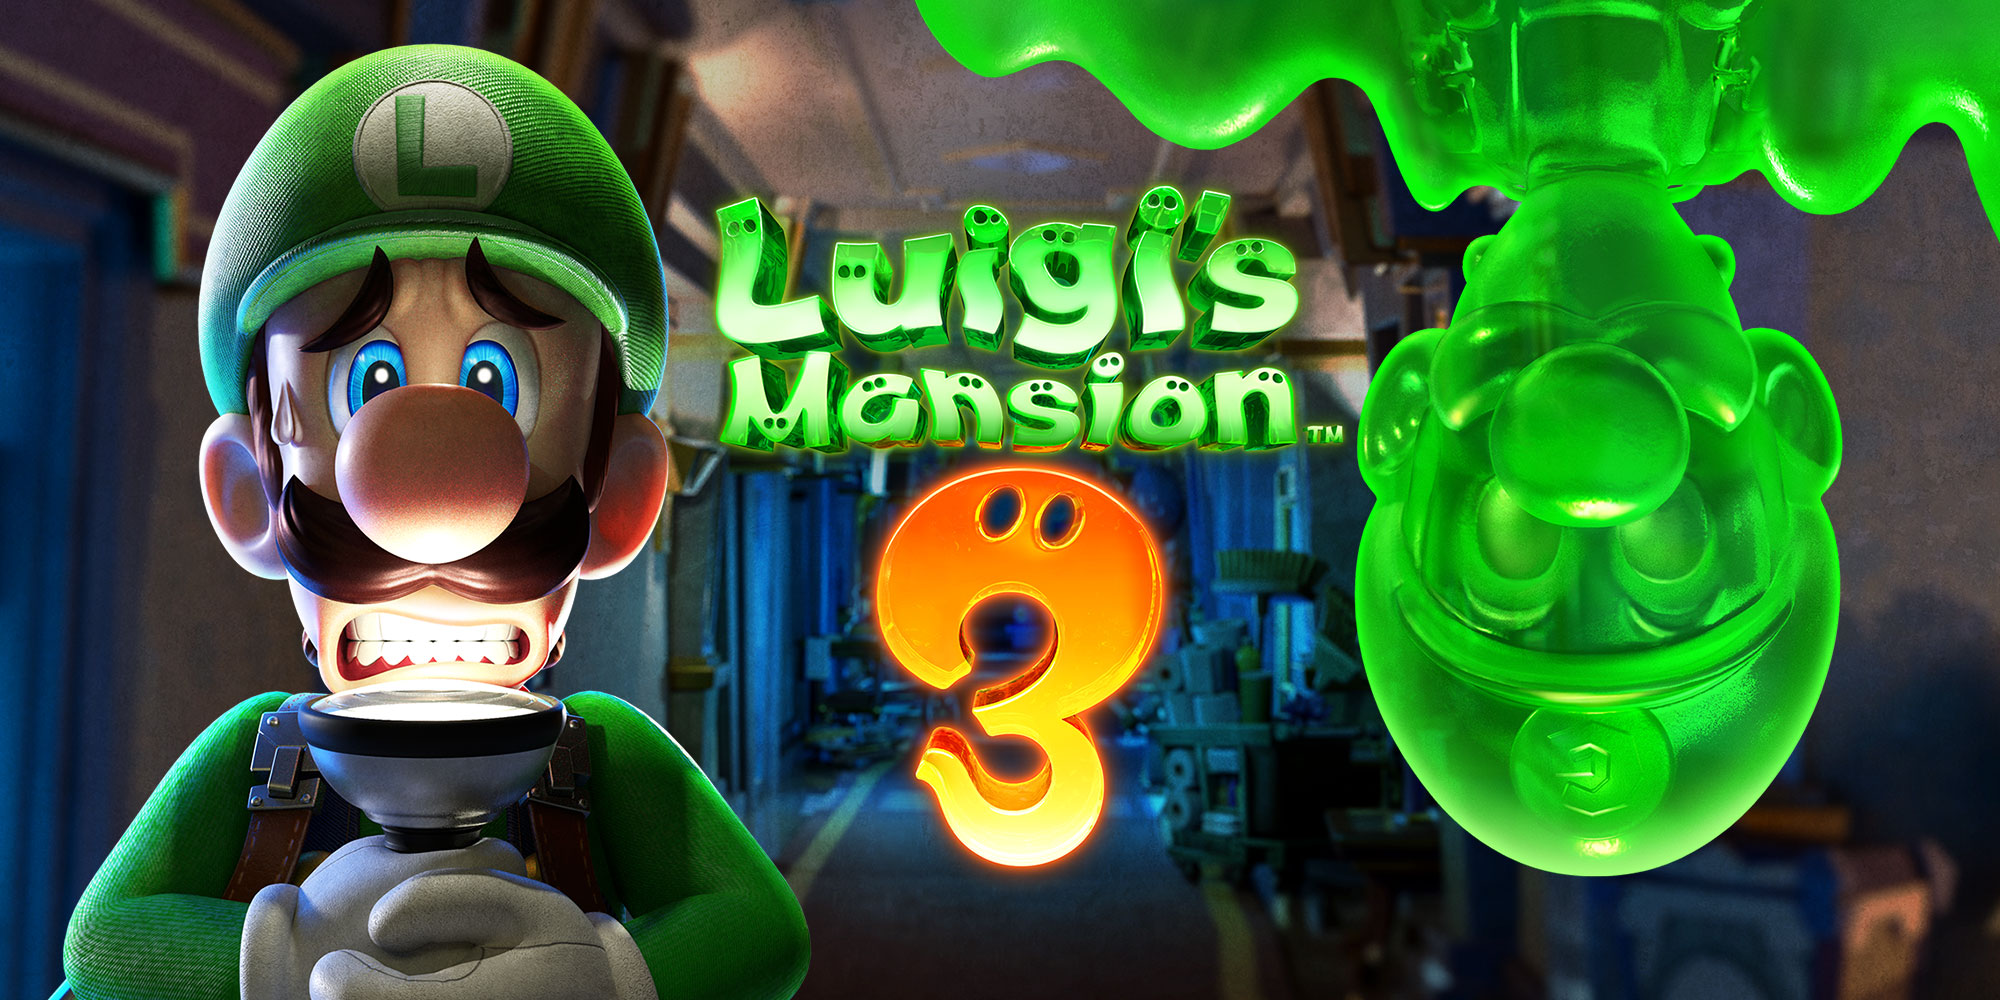 Préparez-vous à trembler ! Luigi's Mansion 3 vient hanter la Nintendo Switch dès le 31 octobre !